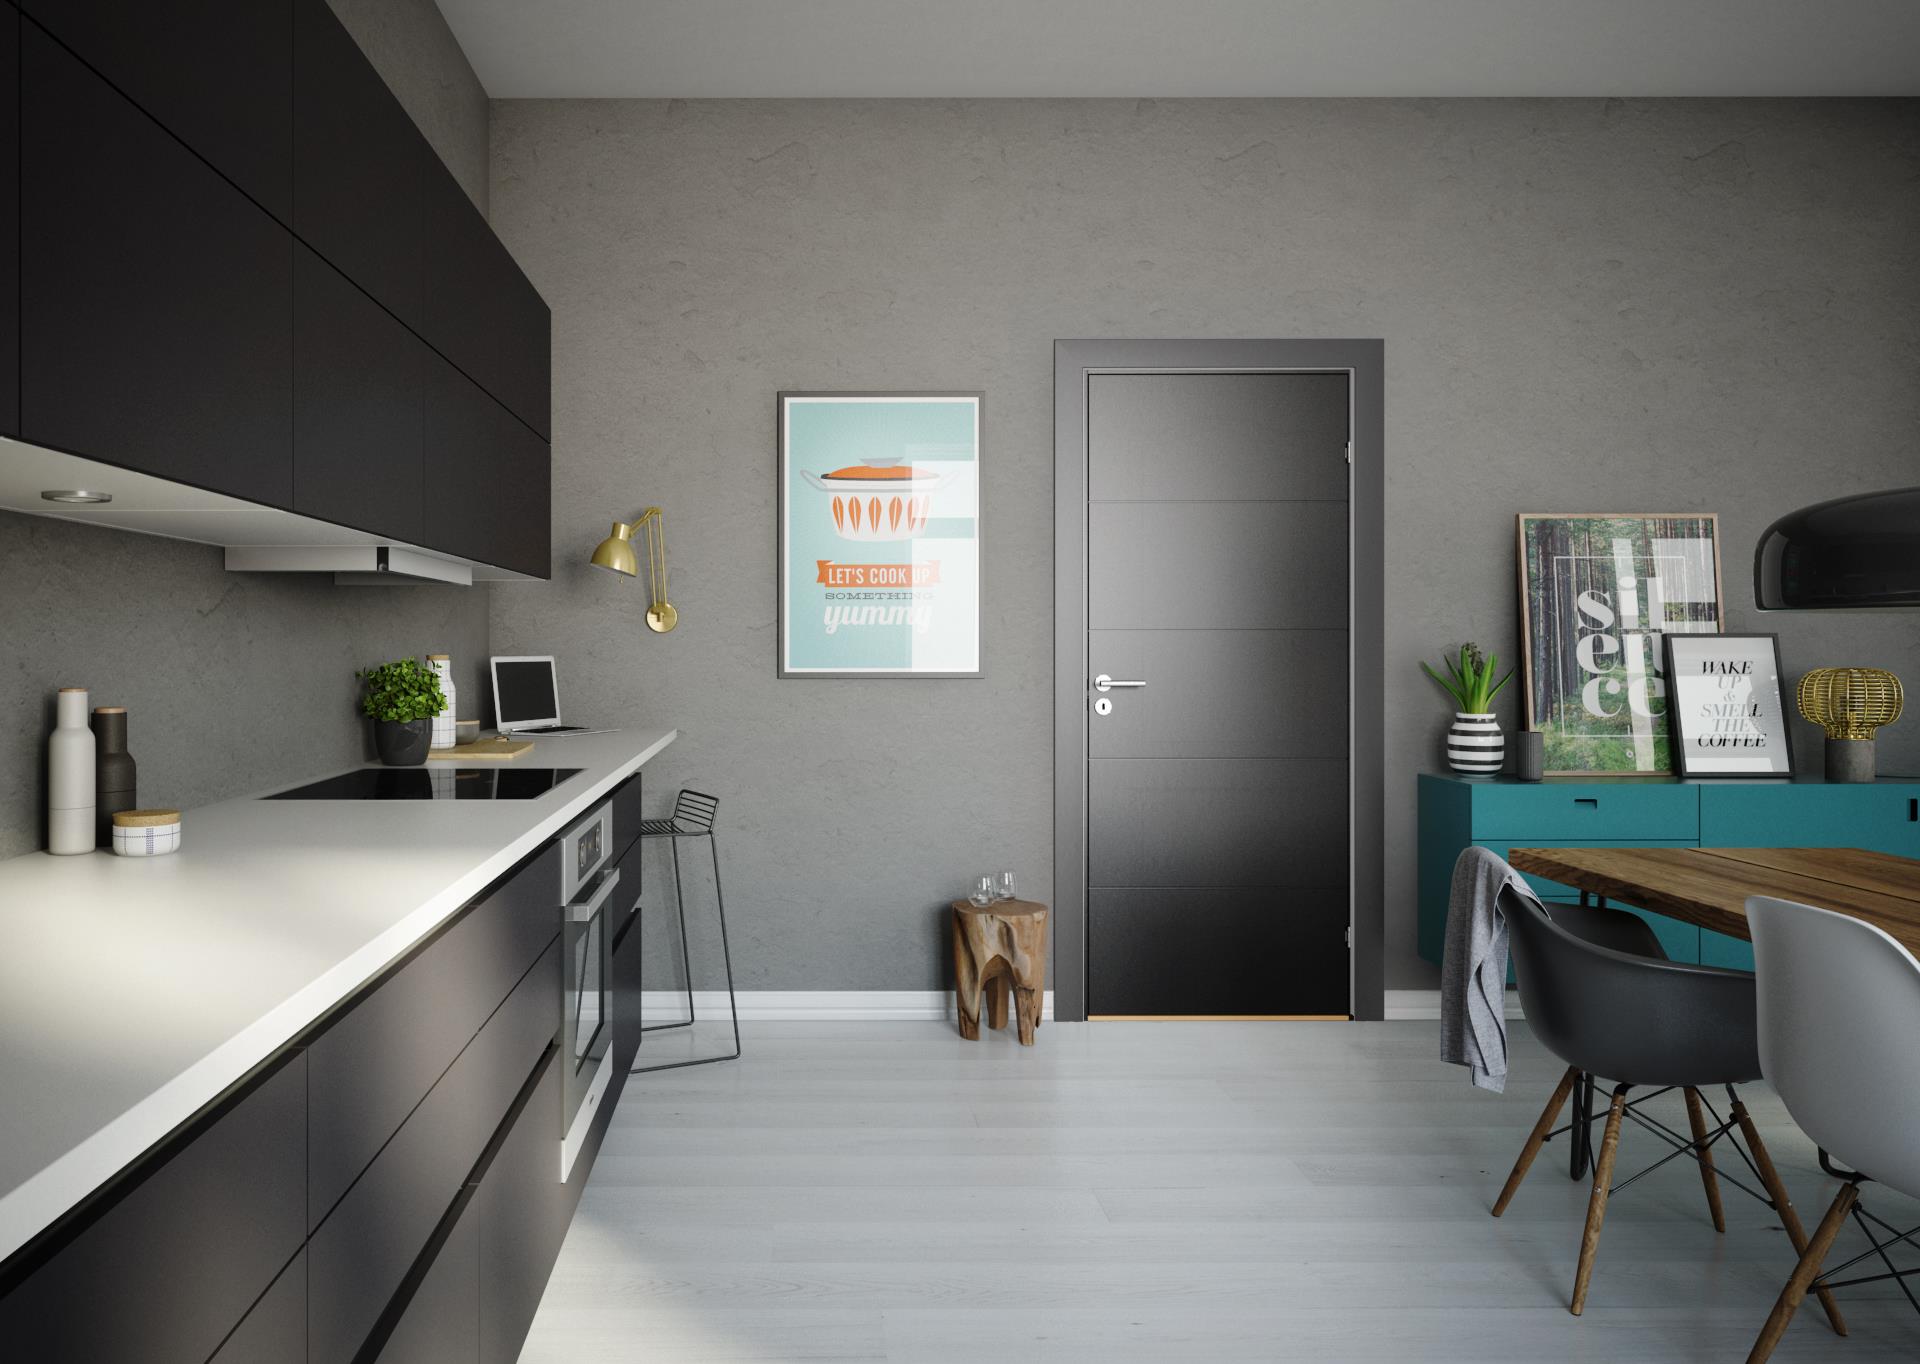 Ny dørserie kombinerer minimalisme  og personligt udtryk